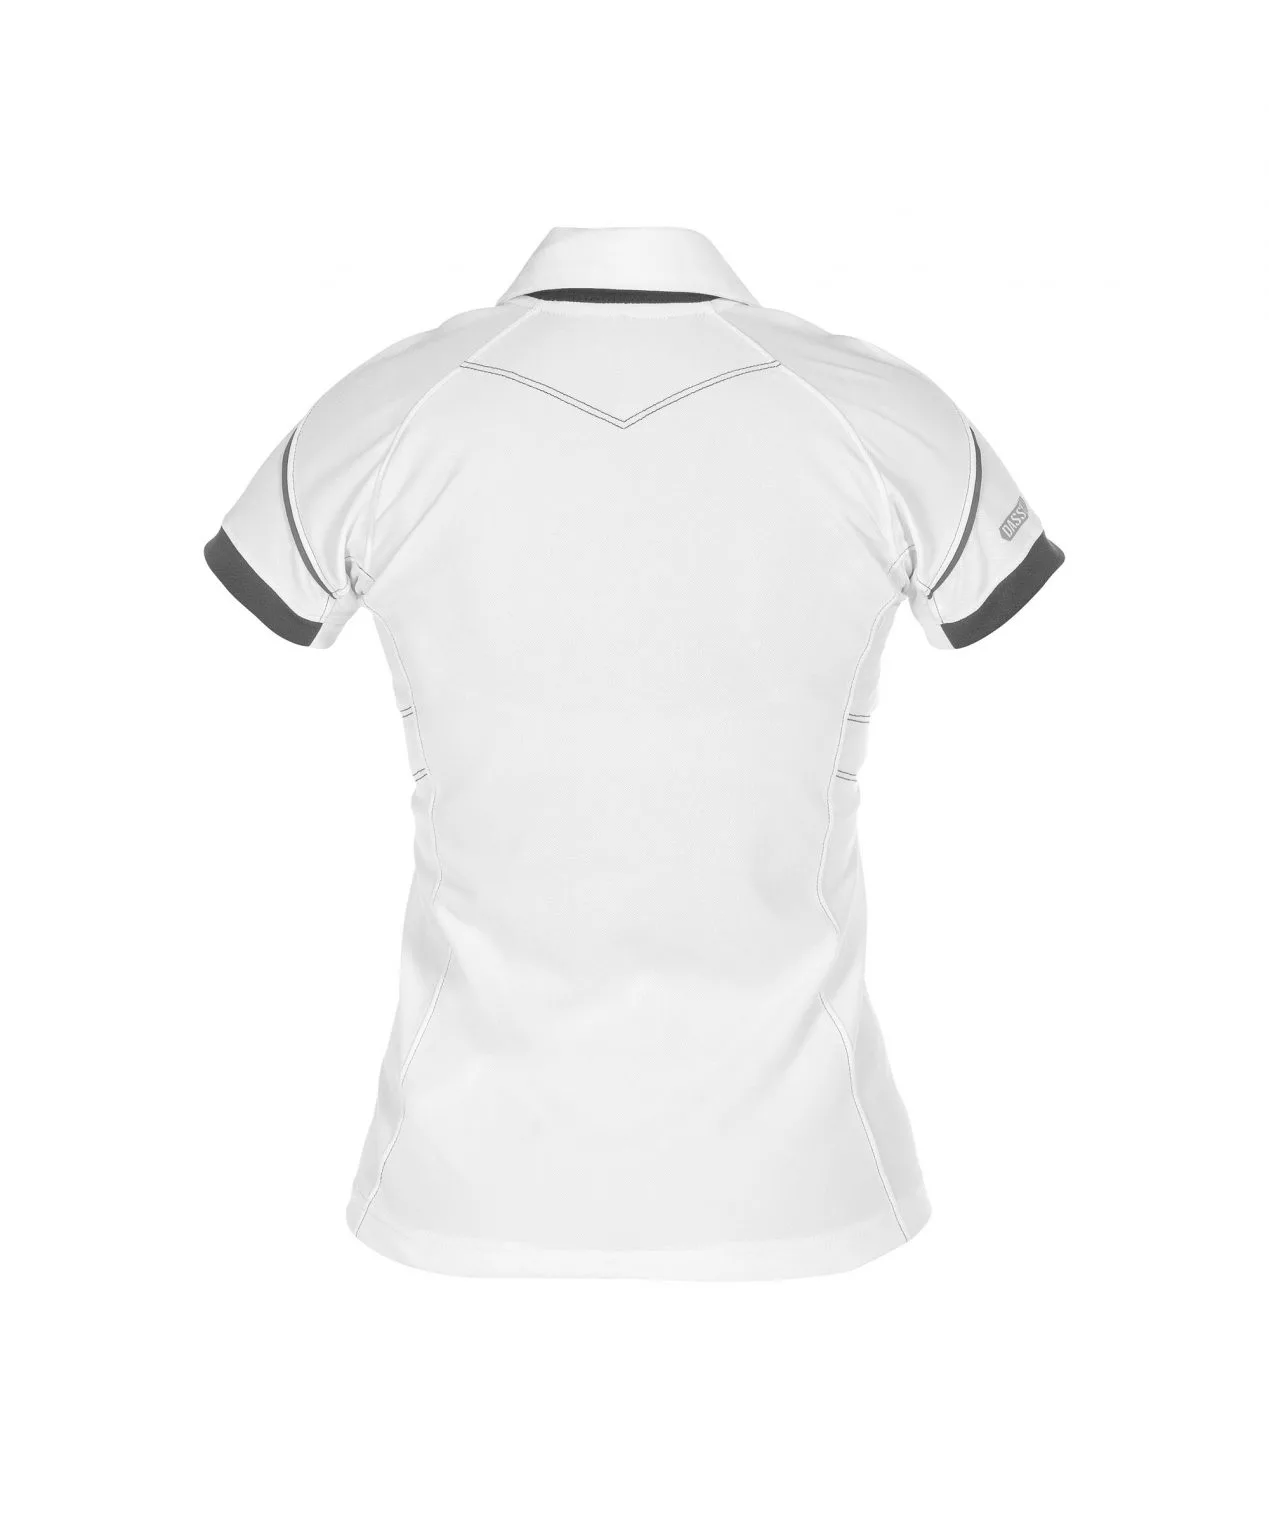 Dassy Traxion Poloshirt Für Damen (Uv-Schutz)